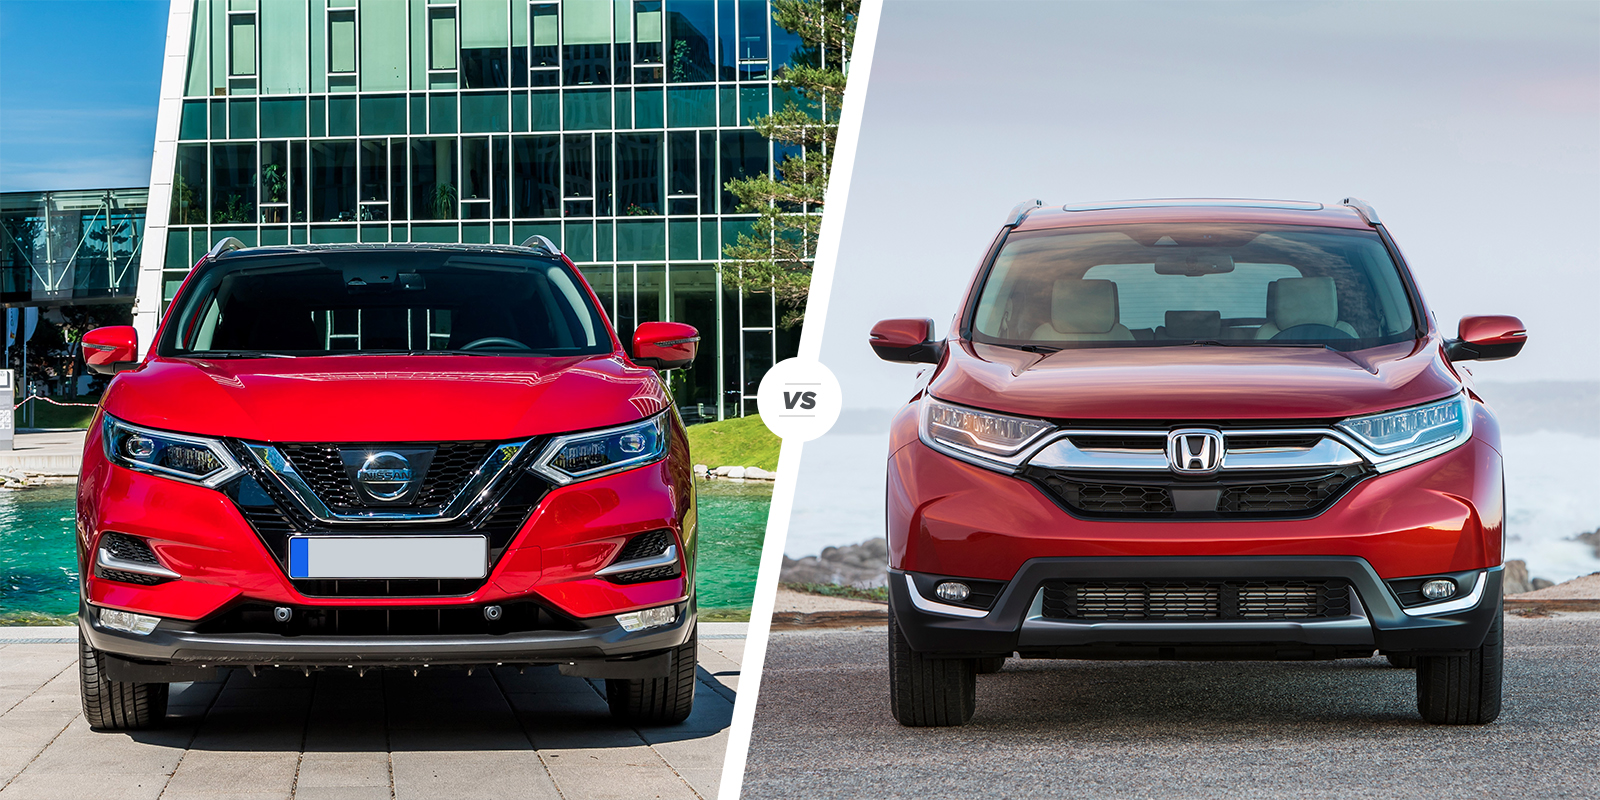 Nissan Qashqai vs Honda CRV which is best? carwow